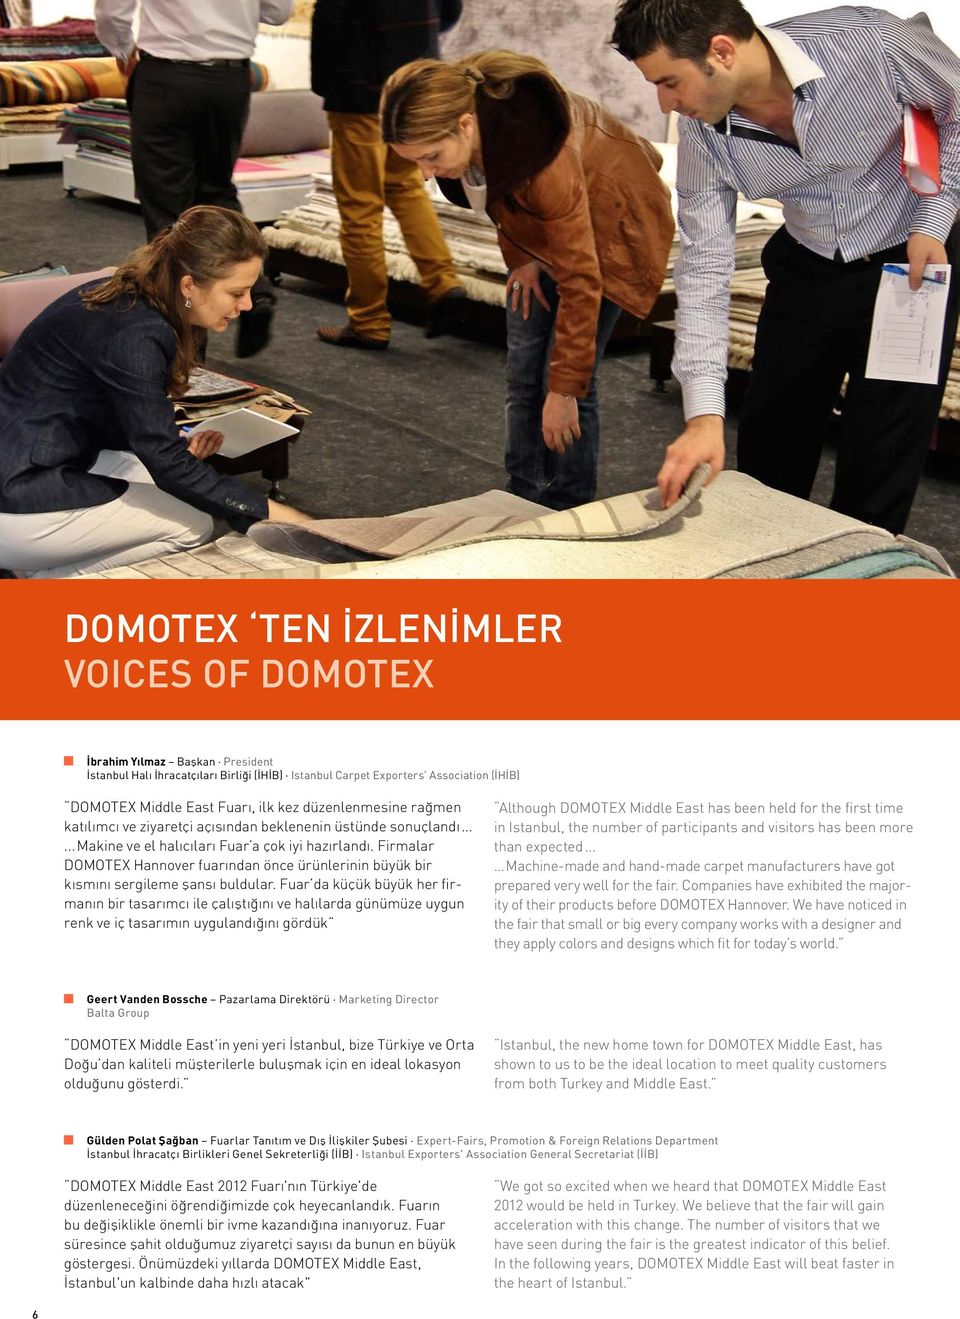 Firmalar DOMOTEX Hannover fuarından önce ürünlerinin büyük bir kısmını sergileme şansı buldular.